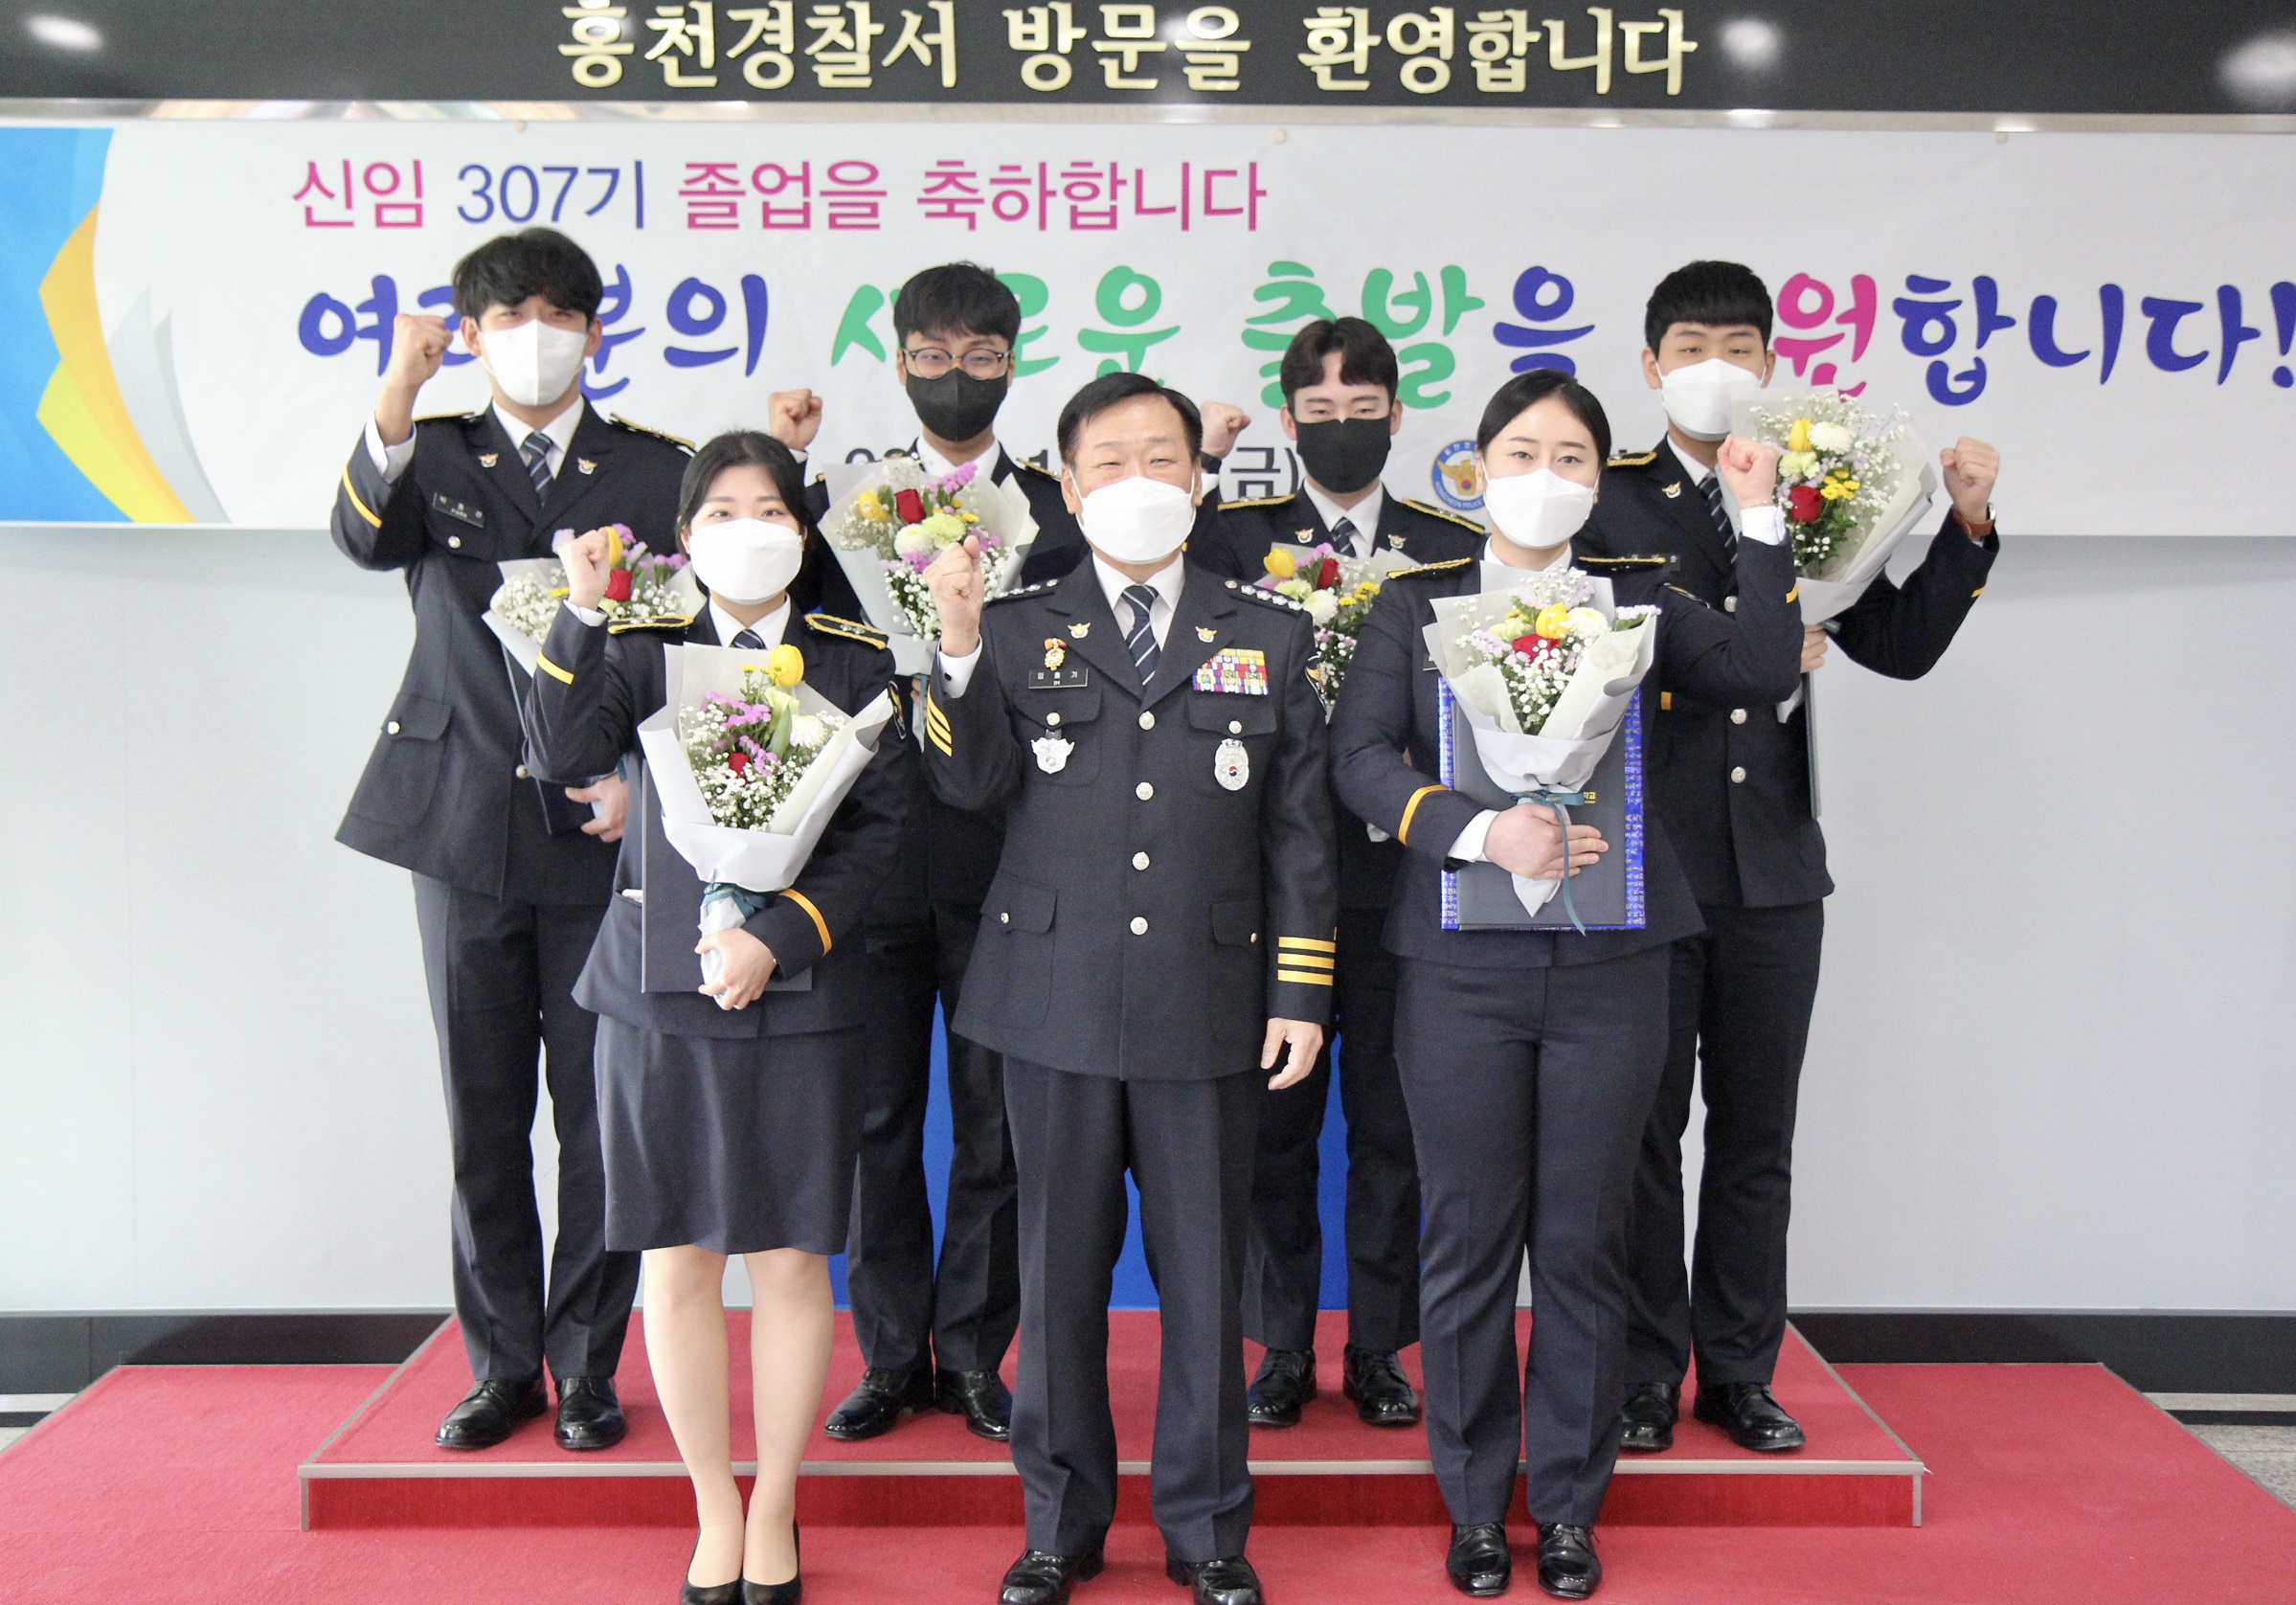 307기 신임경찰관 졸업식-신임경찰관 307기 졸업식 개최